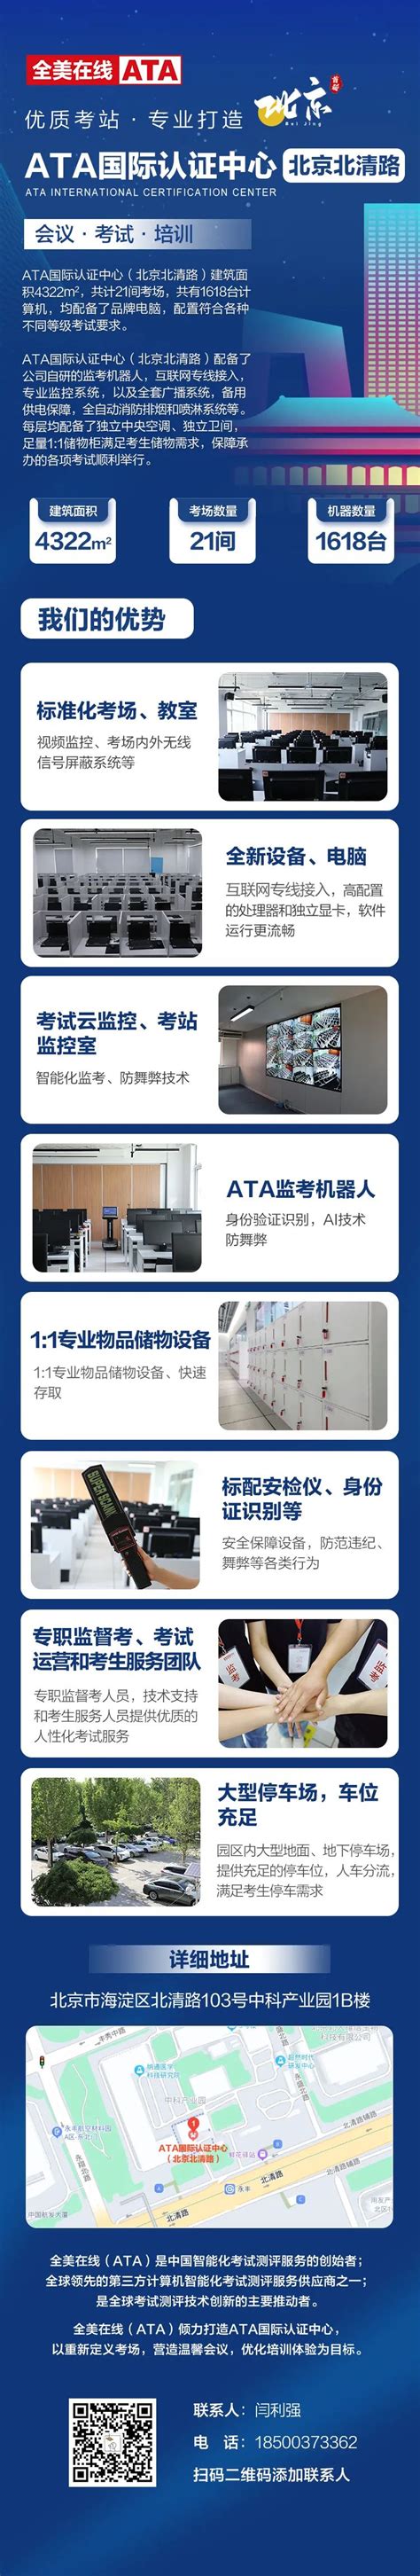 优质考站|ATA国际认证中心（北京古城）-全美在线（ATA）